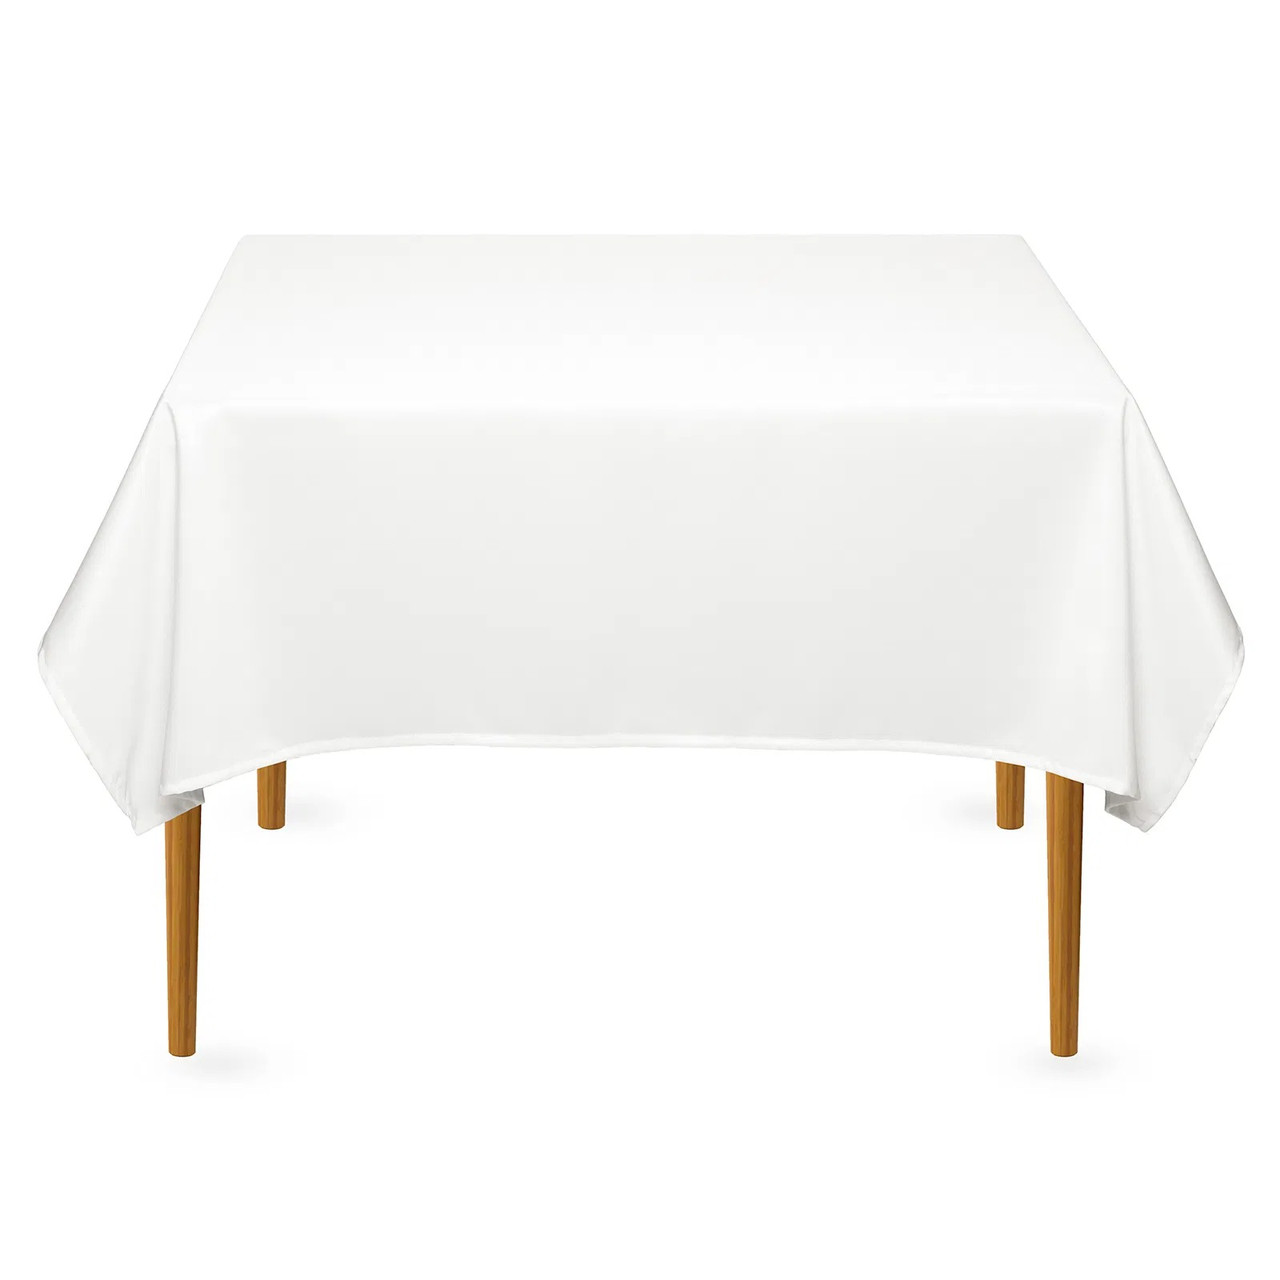 Скатертина квадратна на обідній стіл габардинова біла Atteks - 1416